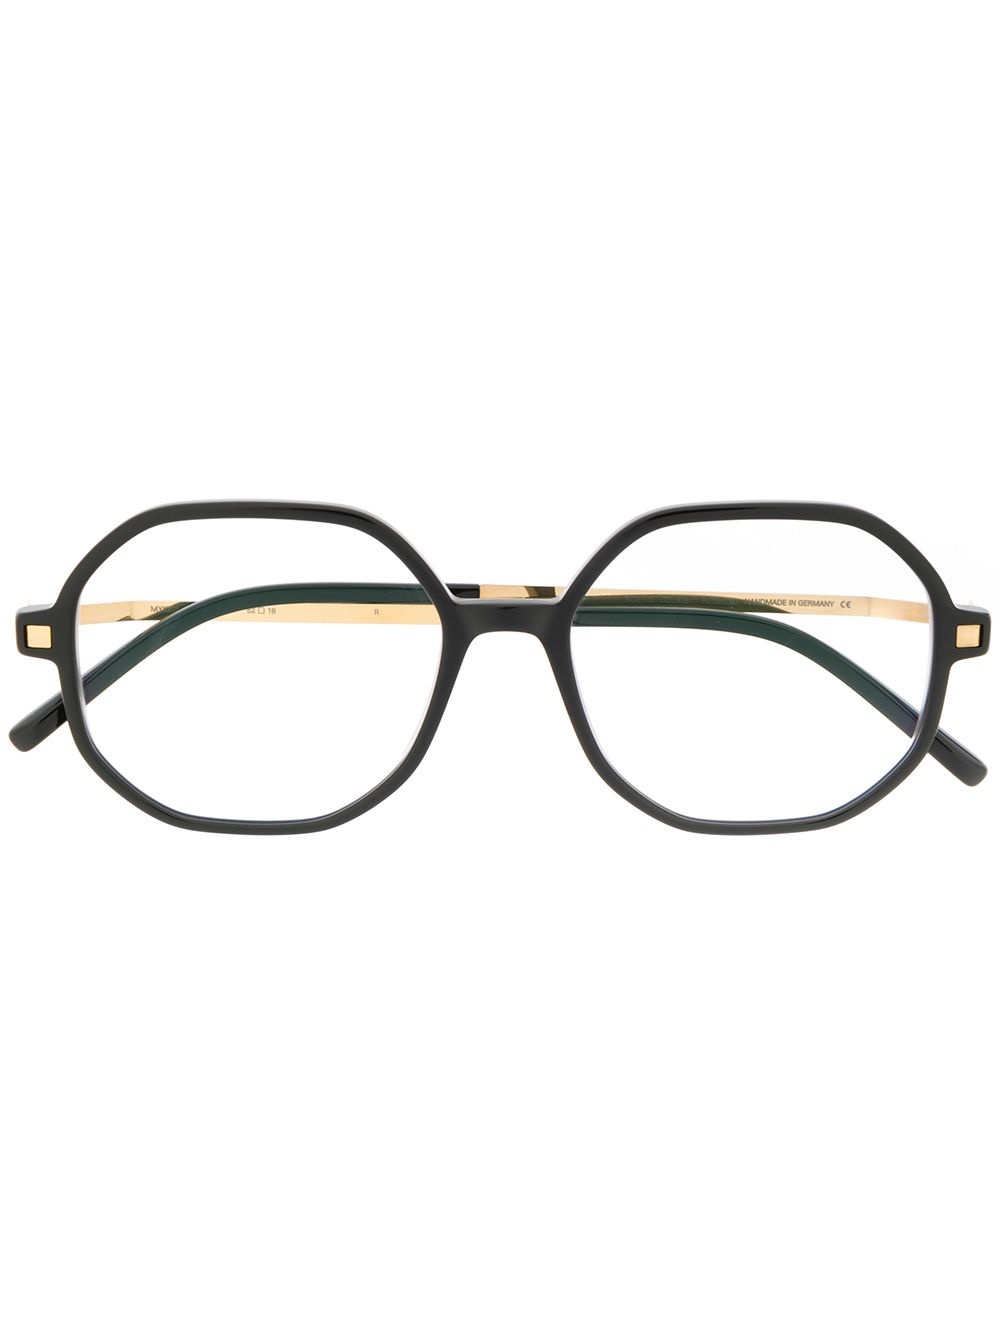 hilla optical glasses - 1